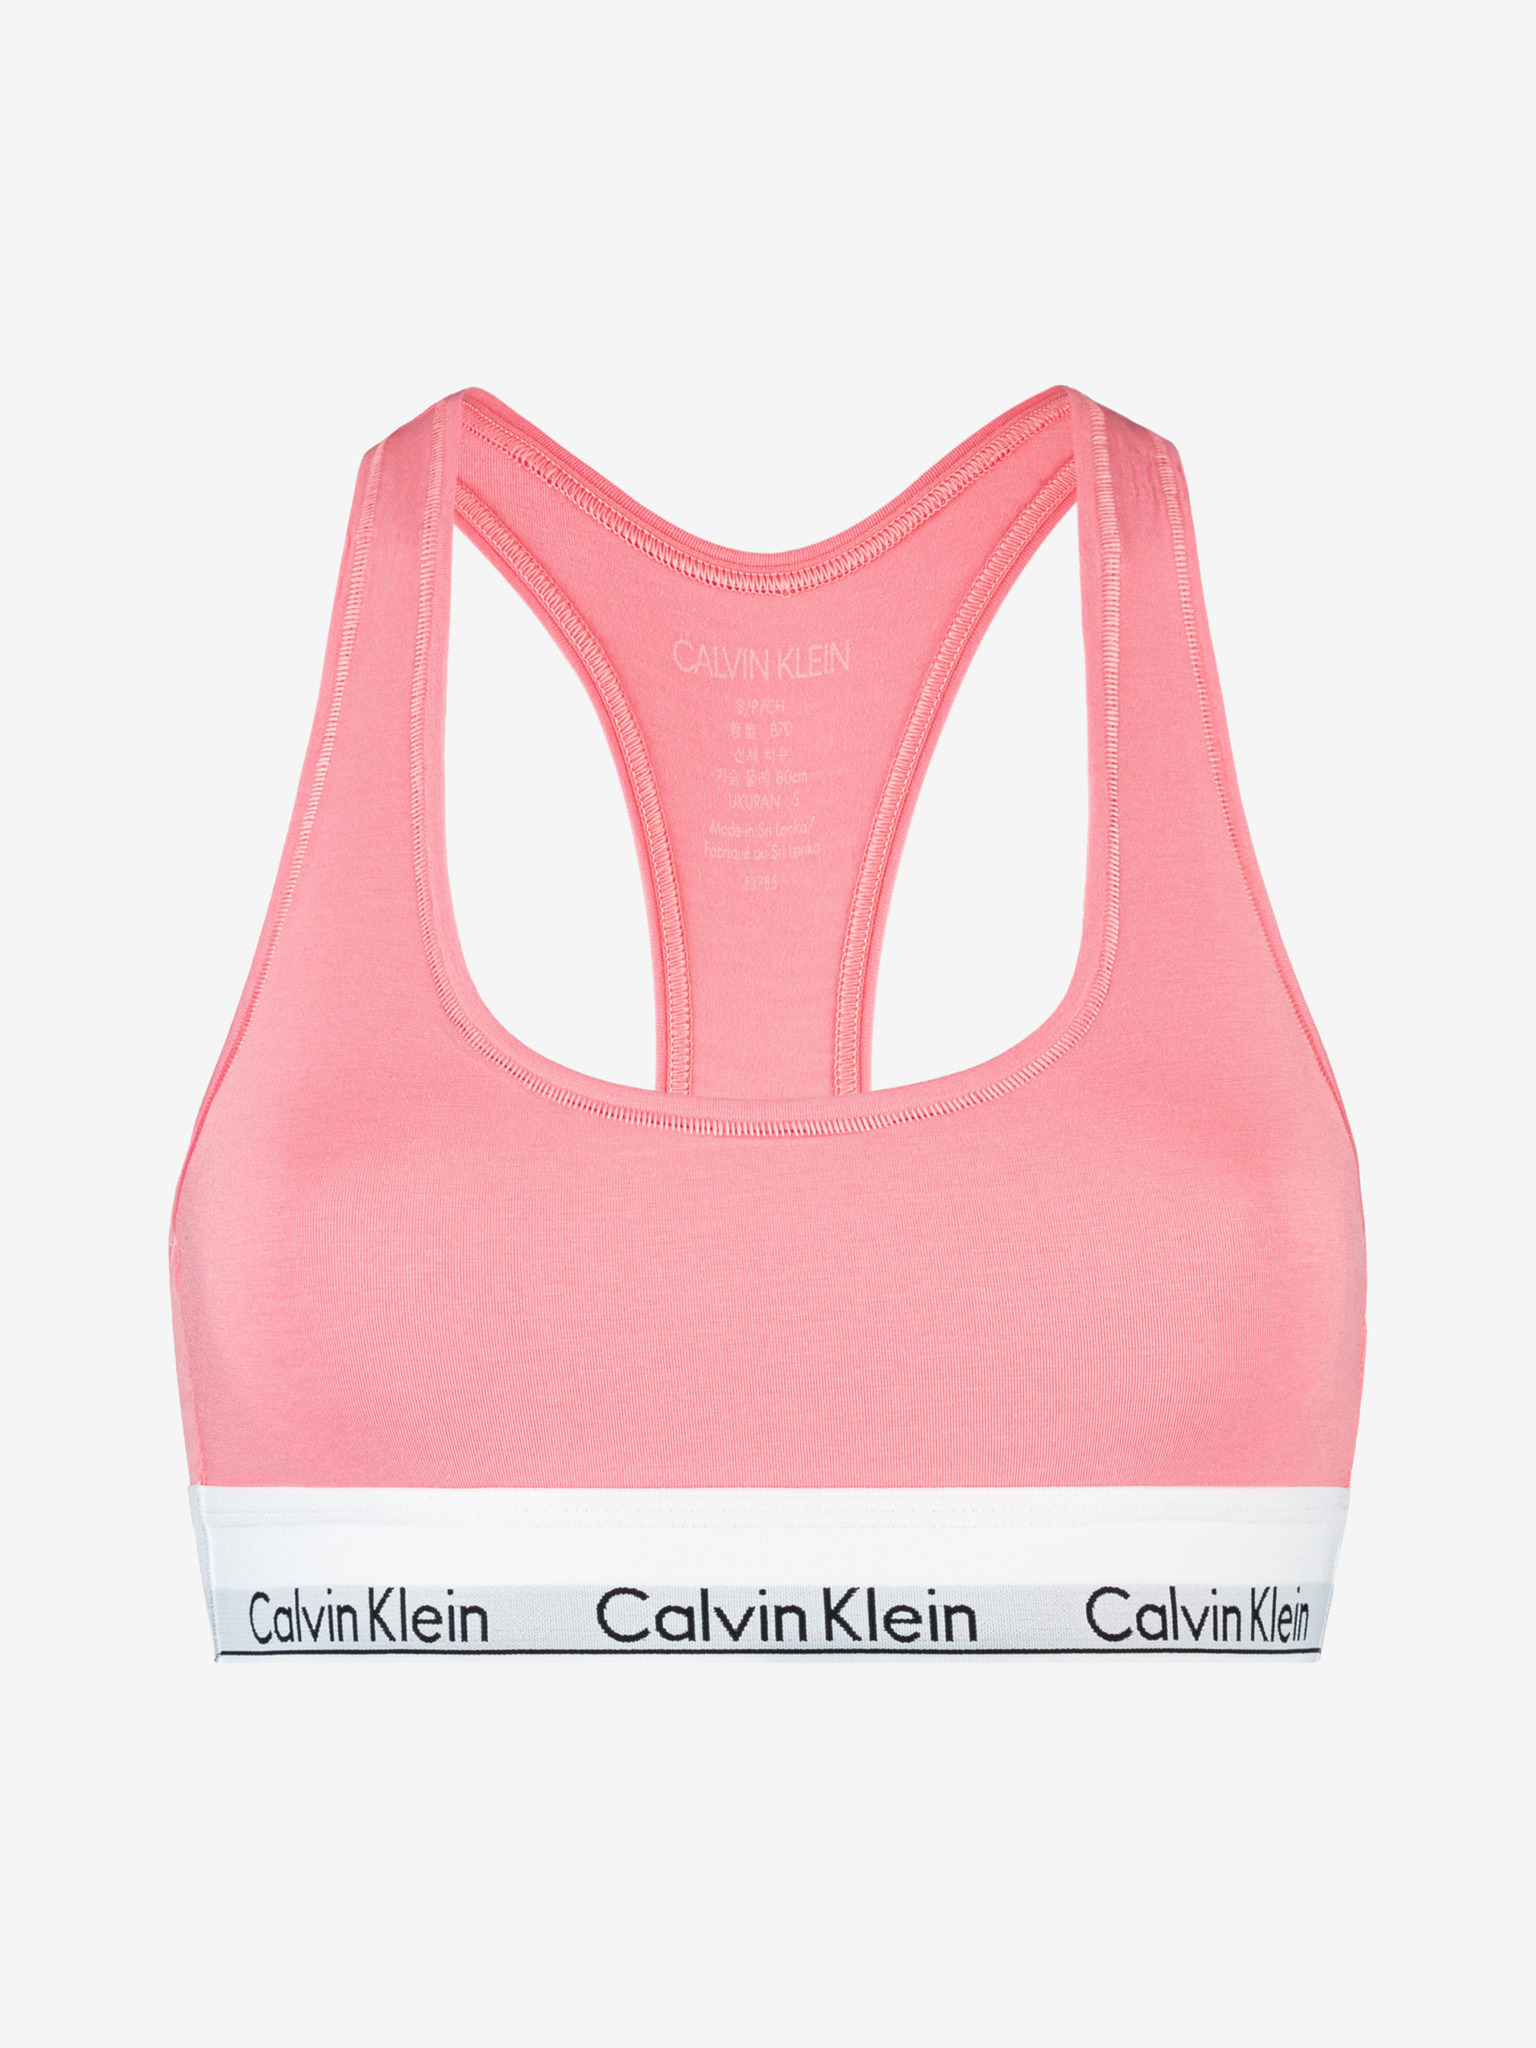 Women's Pink Calvin Klein Bras